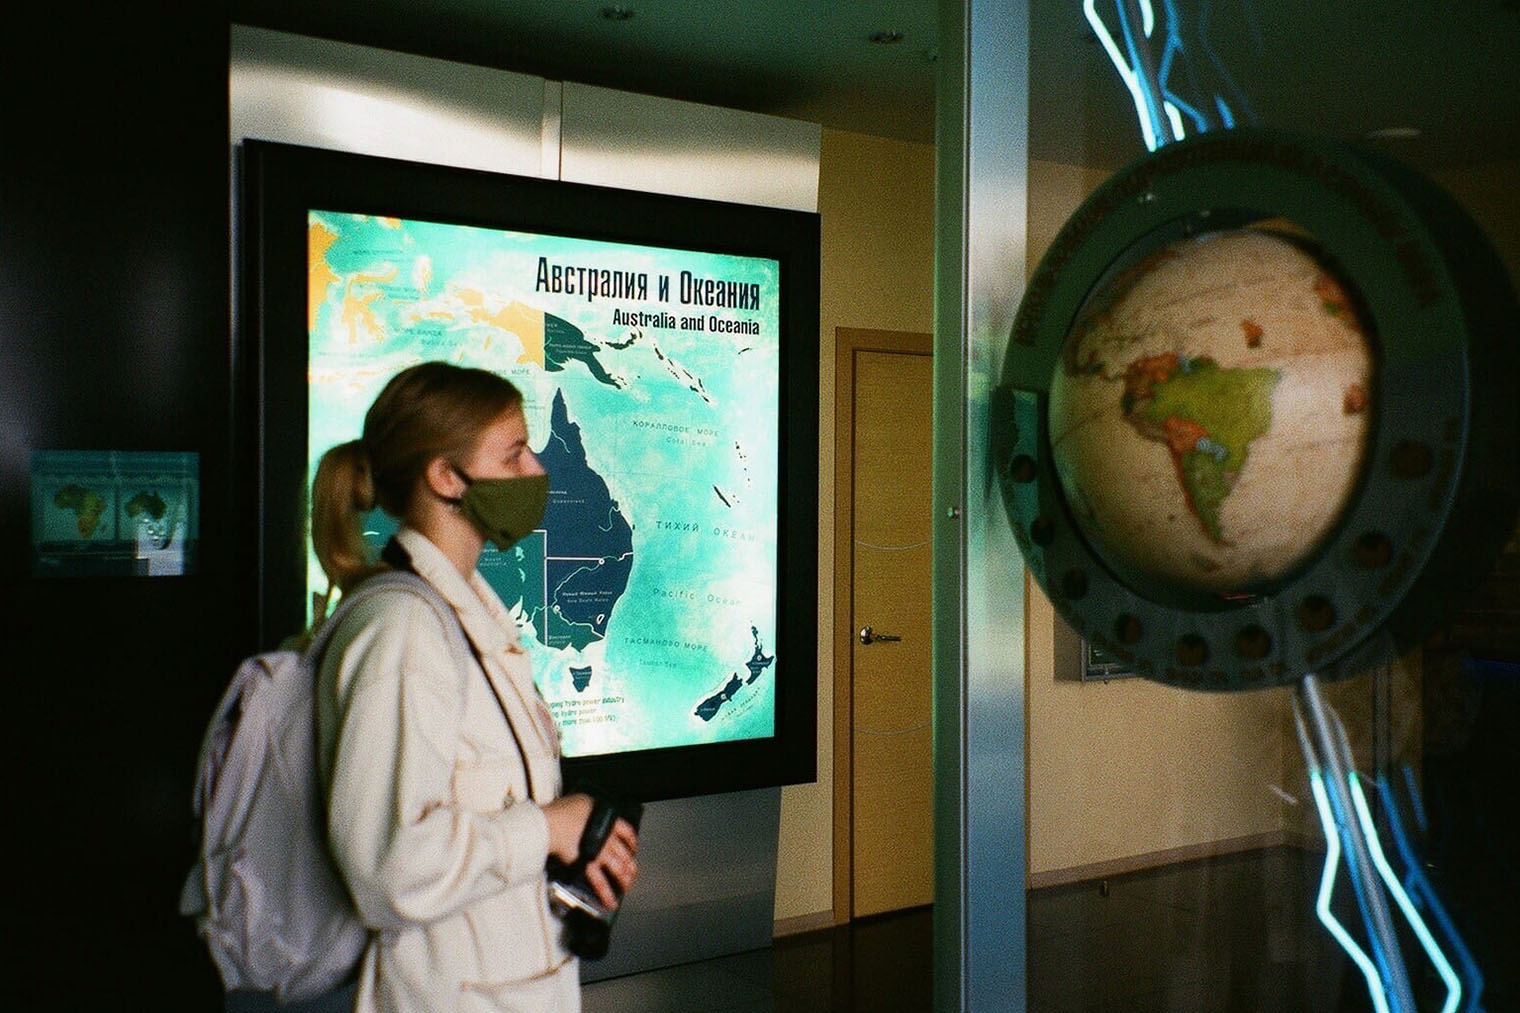 Сфотографировала подругу на фоне светящейся карты в Музее гидроэнергетики. Ездили в коронавирусные времена, поэтому посещали музей в маске